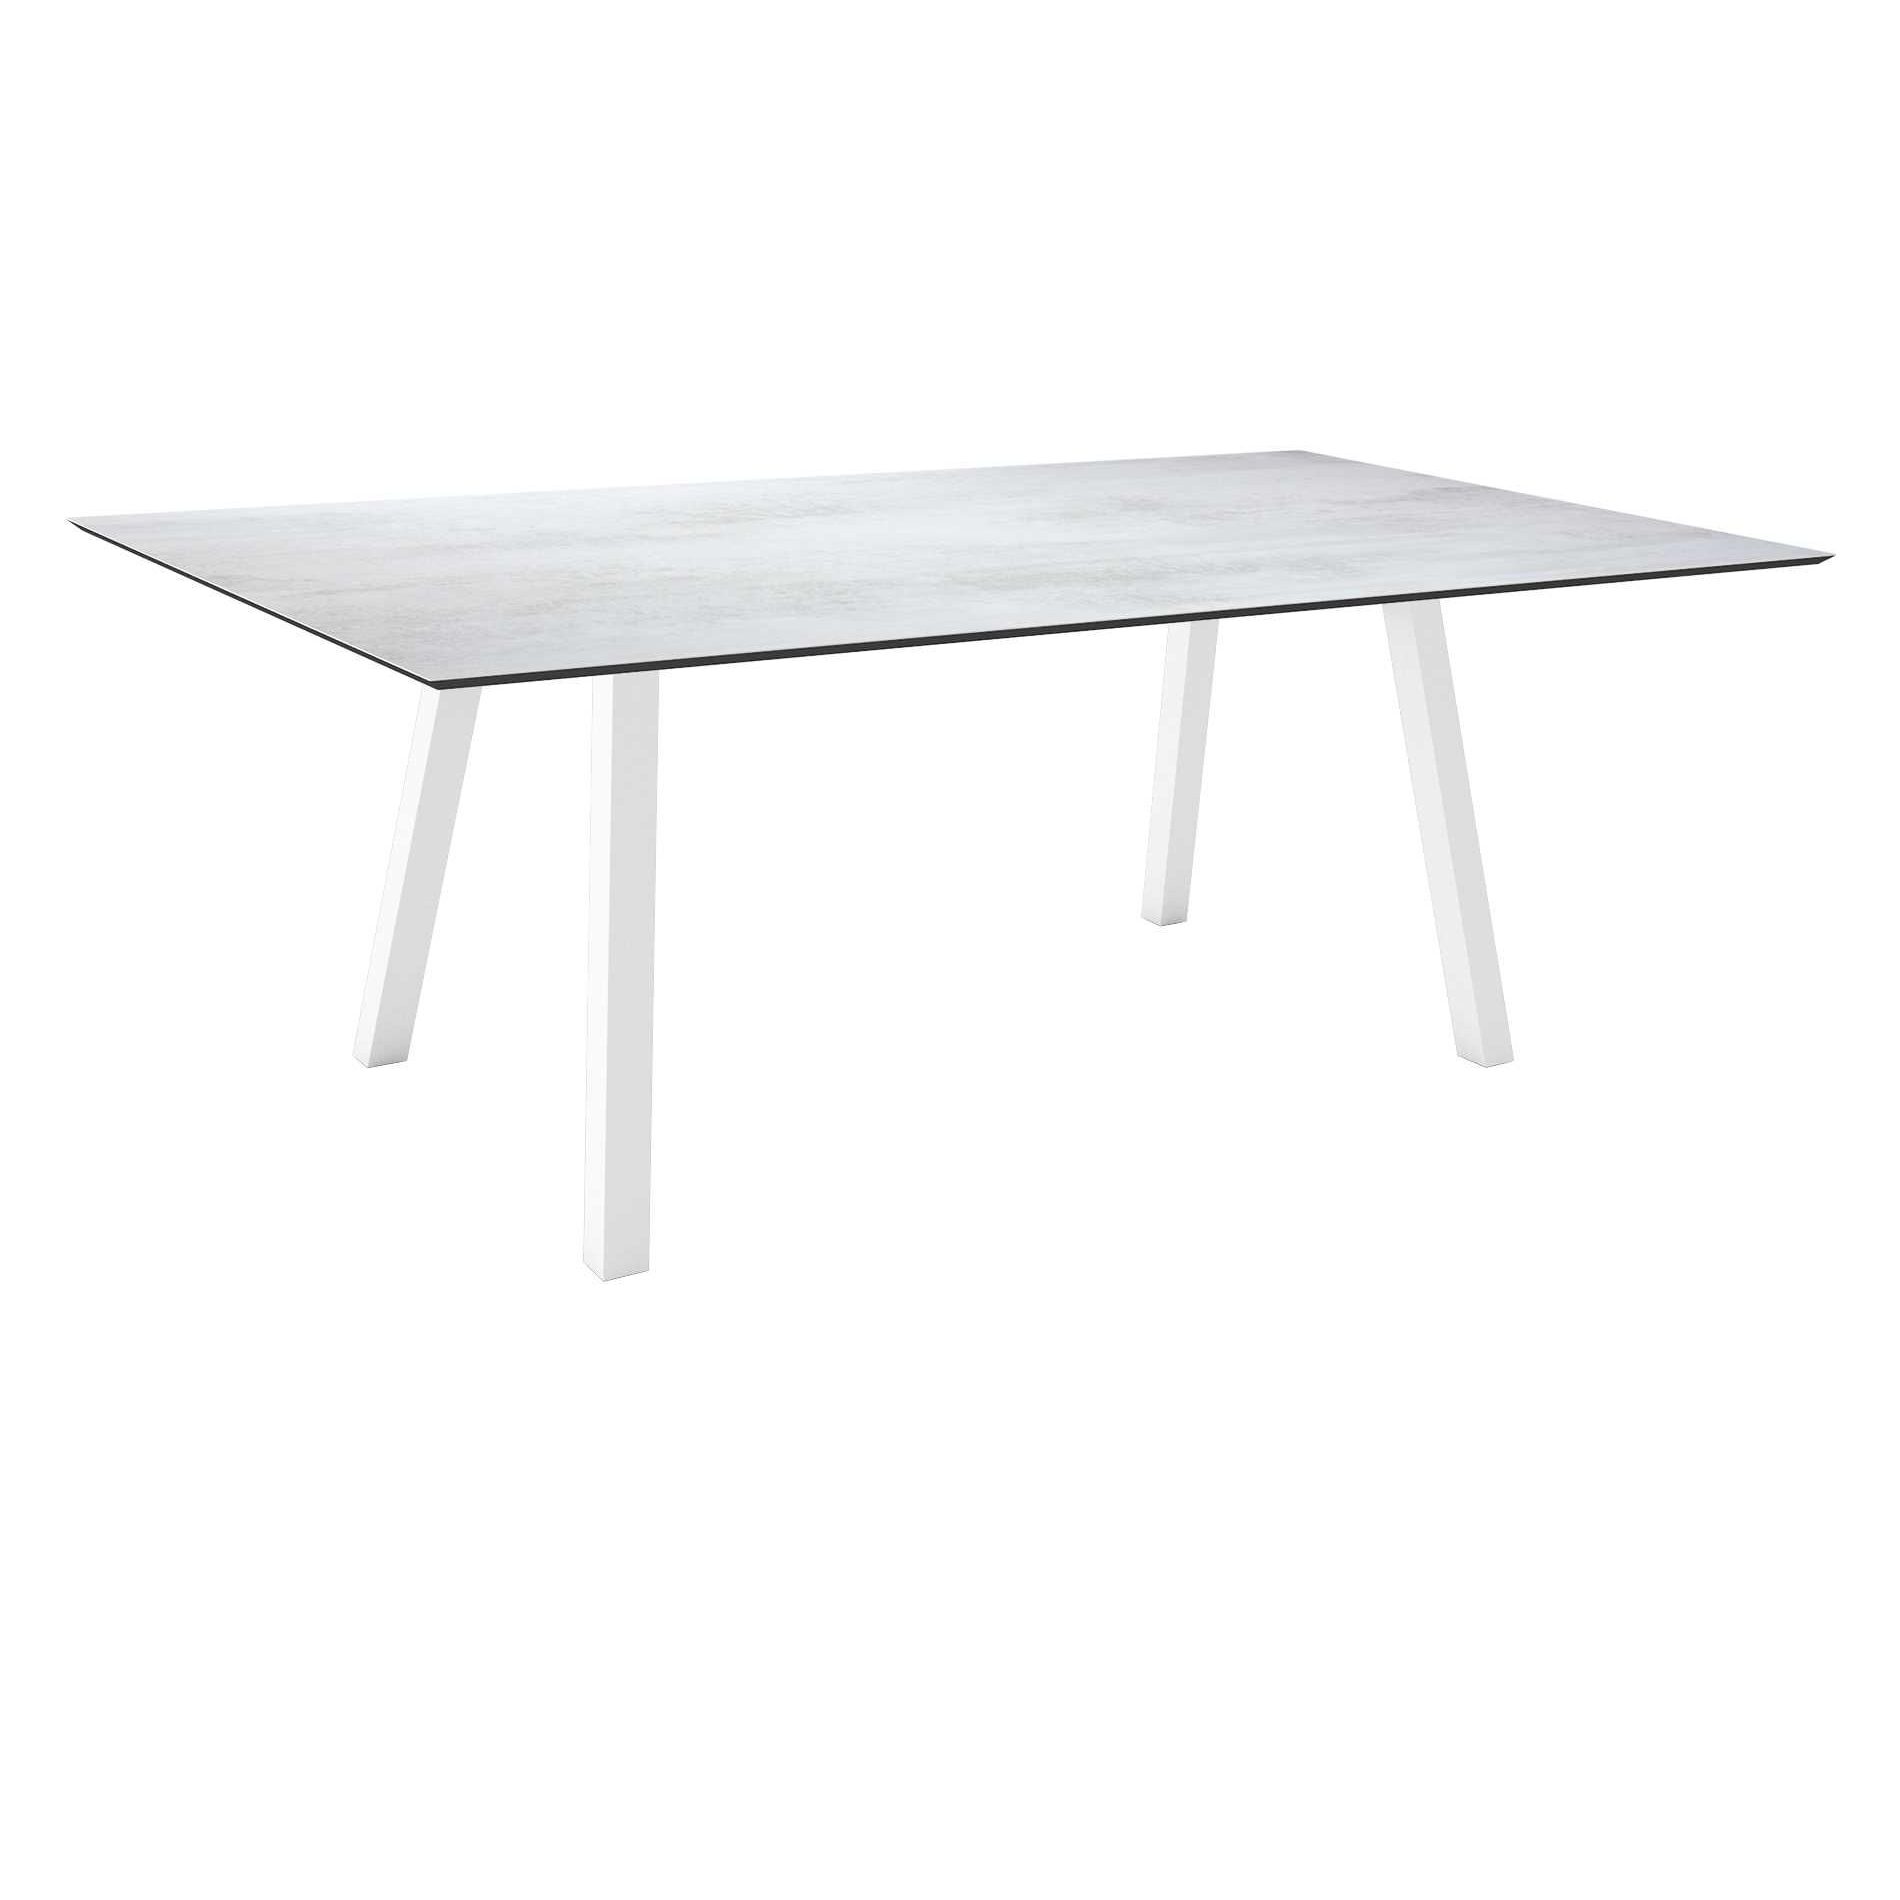 Stern Tisch "Interno", Größe 180x100cm, Alu weiß, Vierkantrohr, Tischplatte HPL Zement hell